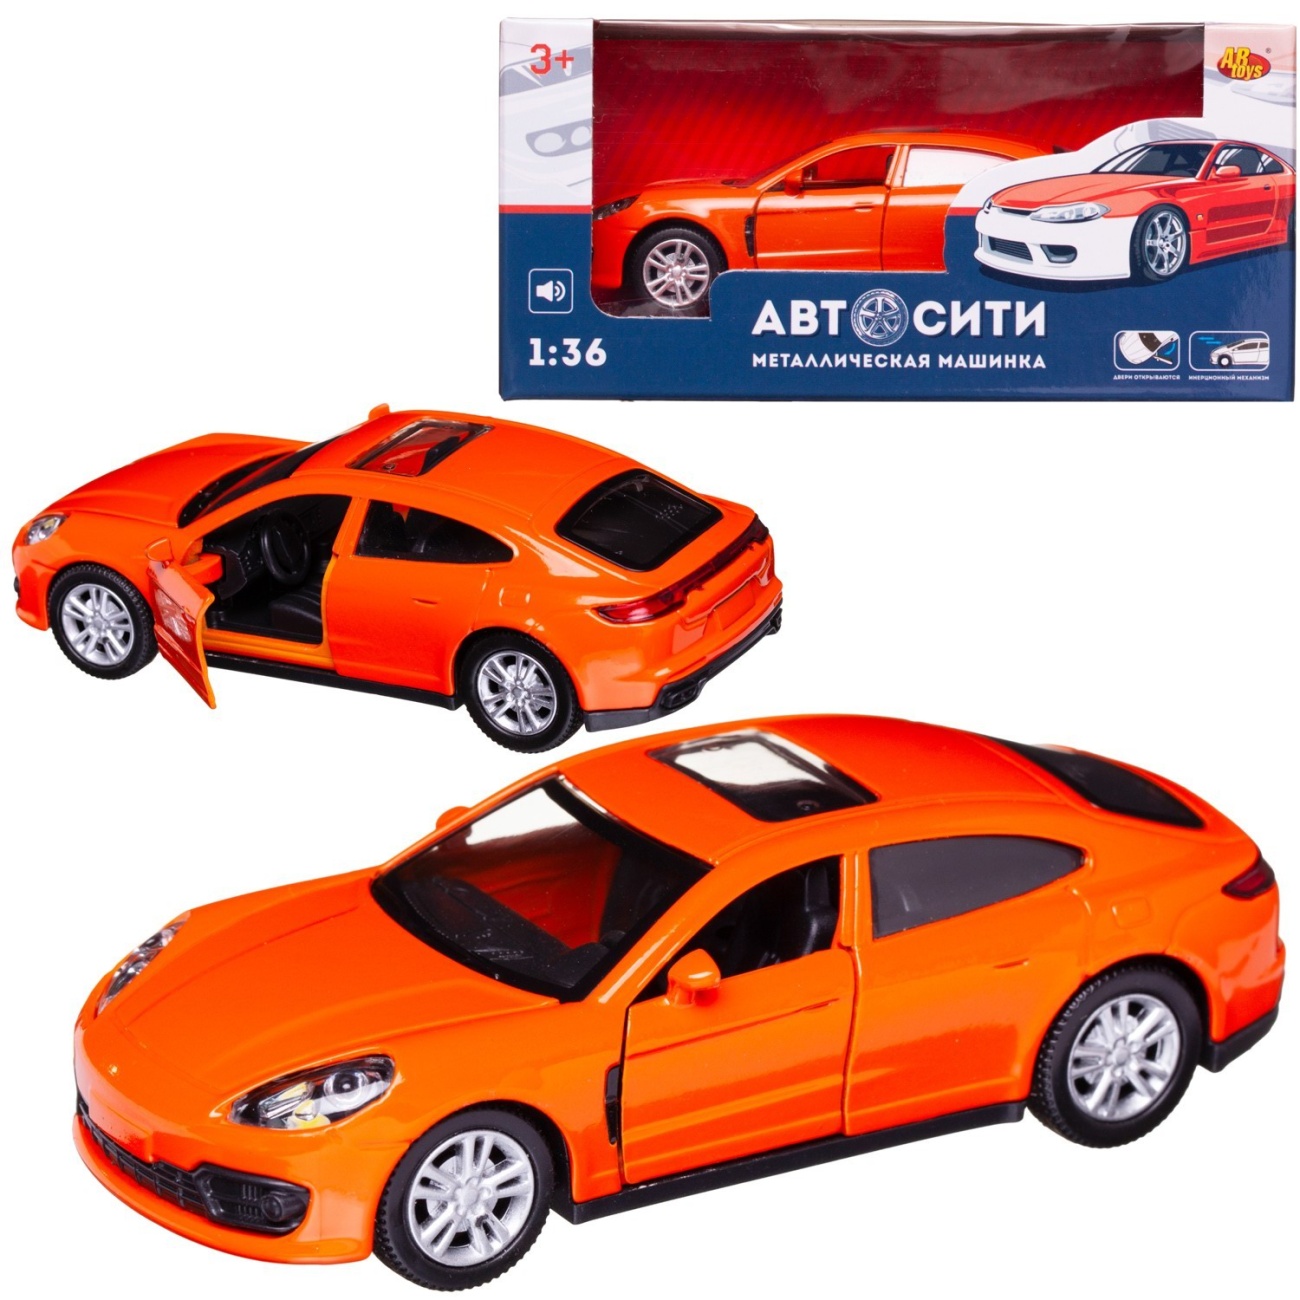 Машинка металл Abtoys АвтоСити 1:36 Седан купе инерция свет-звук C-00523/оранжевый скакалка скоростная 300см sportex трос металл в пвх d34485 4 оранжевый